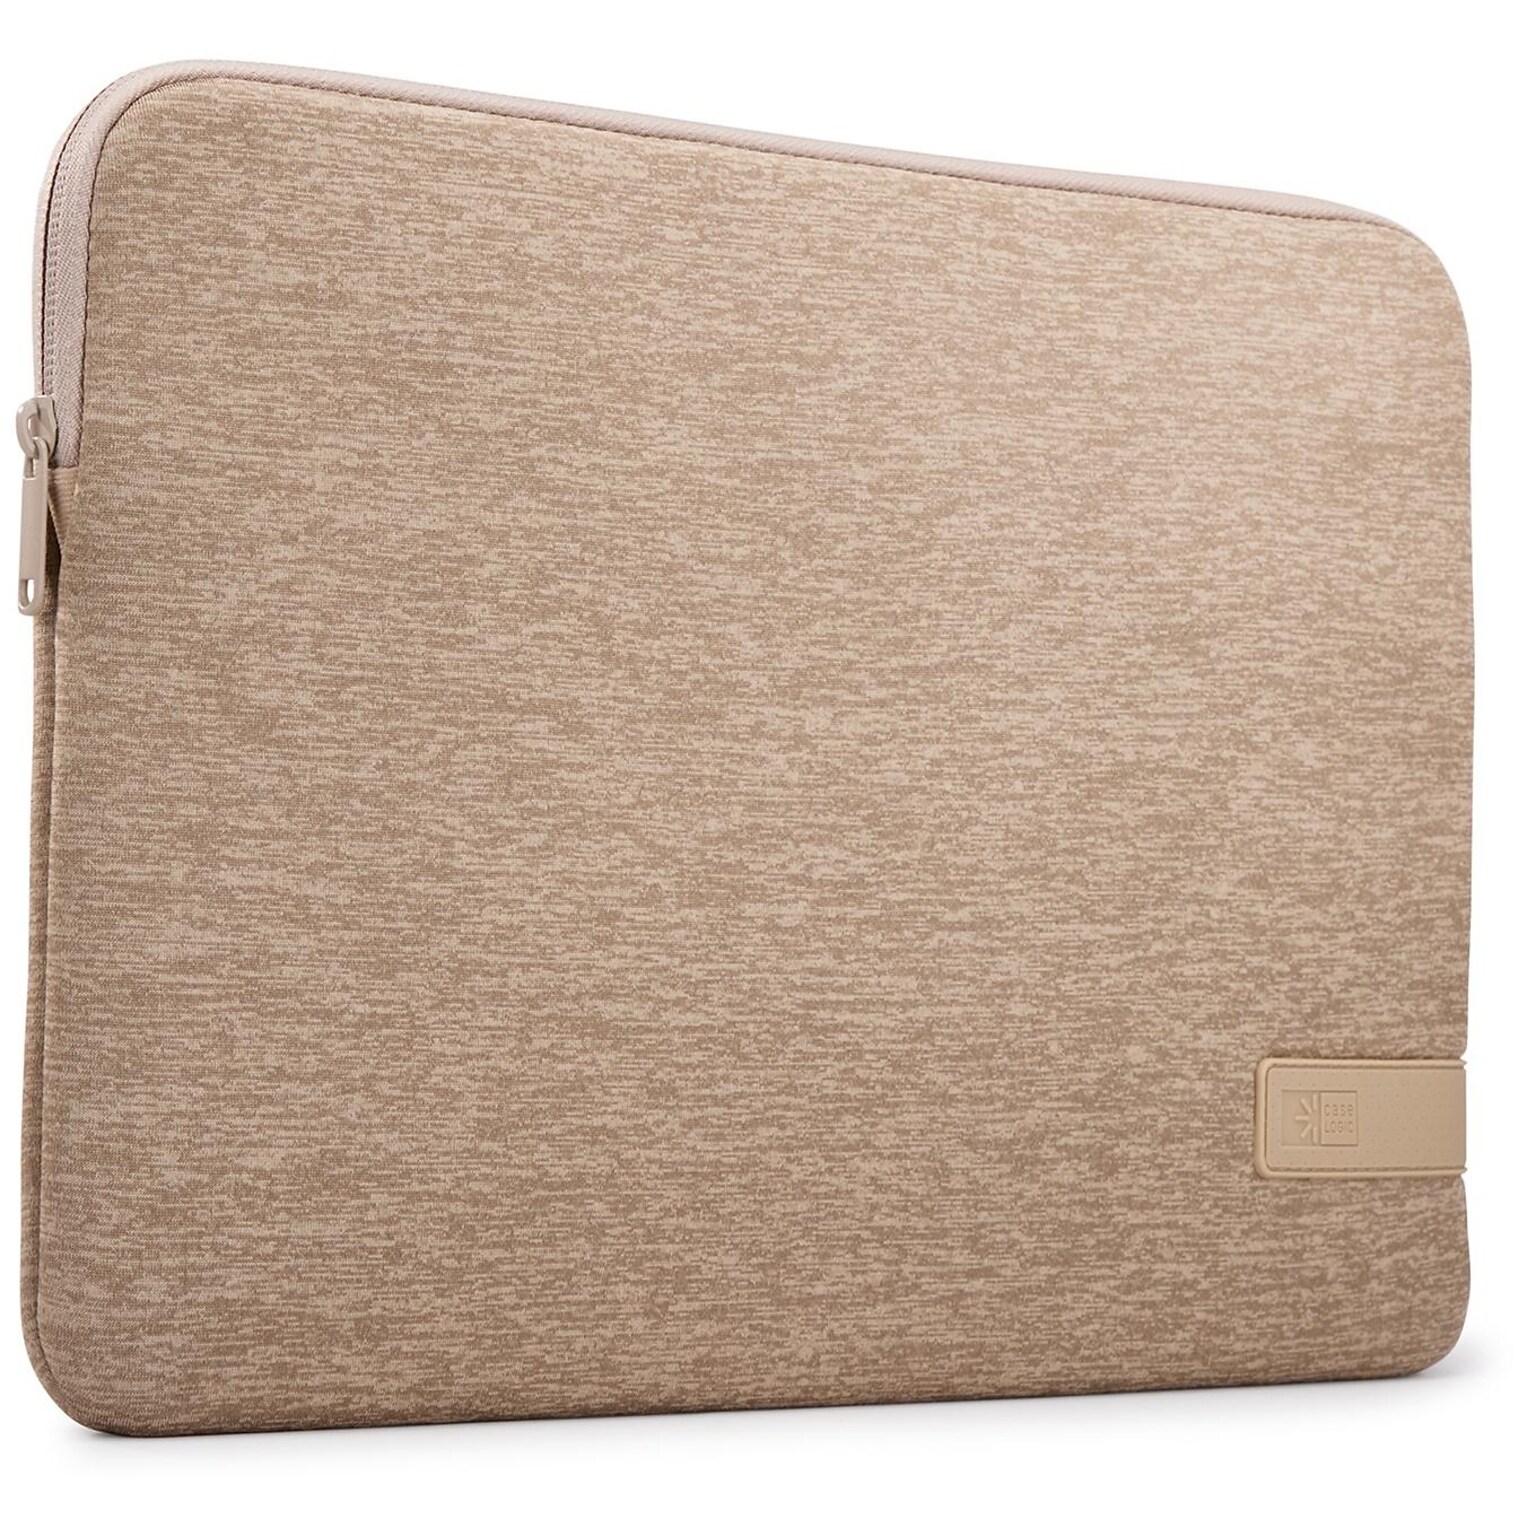 Case Logic Reflect Polyester Laptop Sleeve for 14 Laptops, Boulder Beige, (3204961)